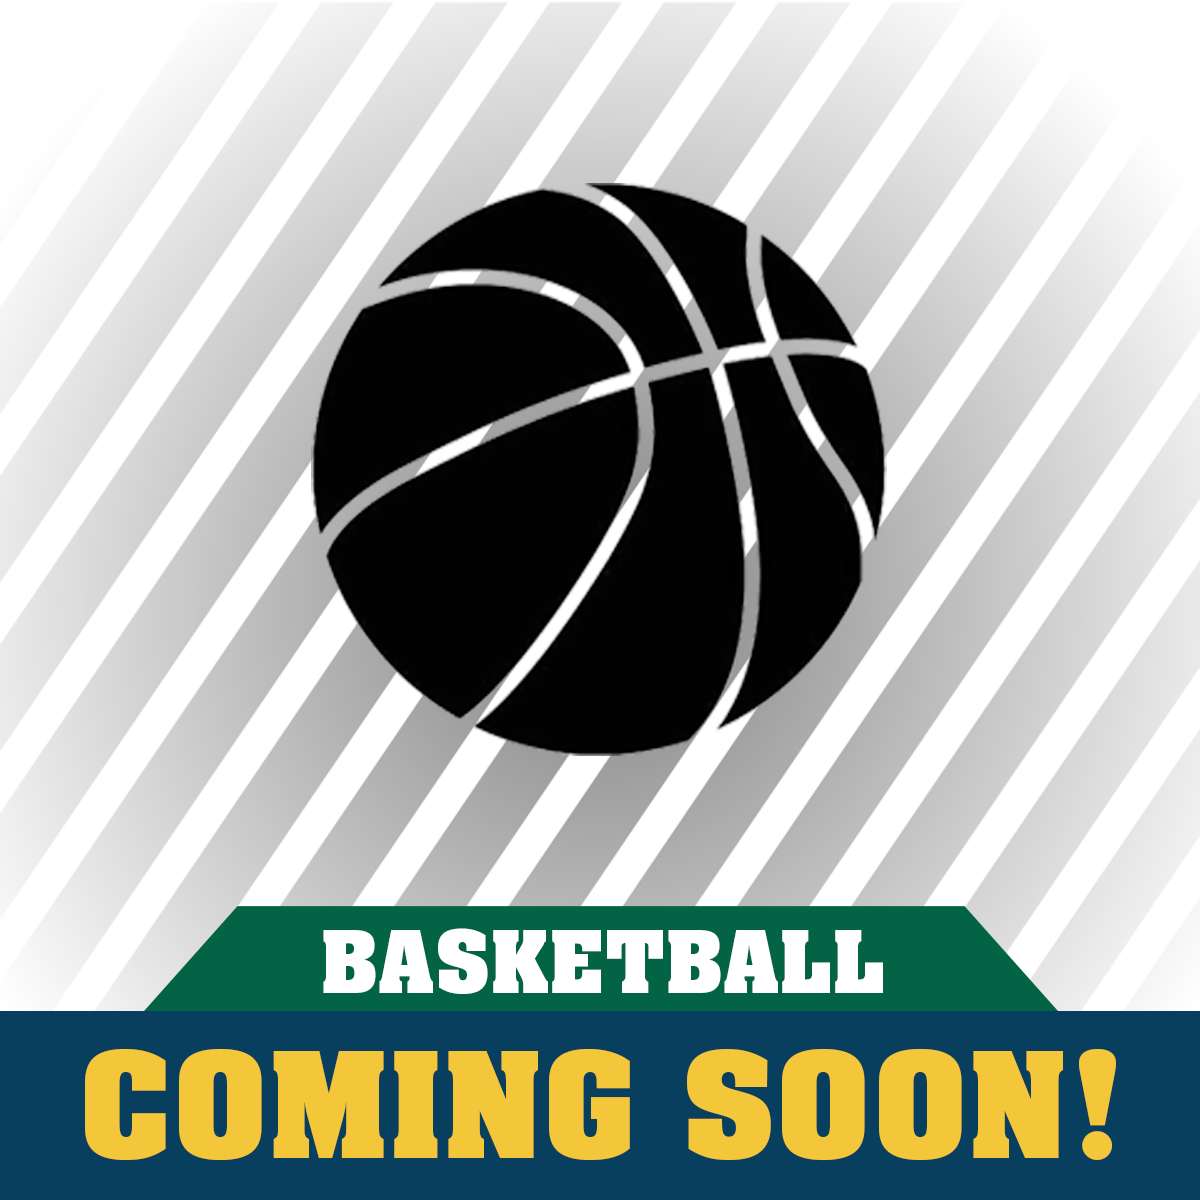 Clover Garden Basketball Apparel Coming Soon!